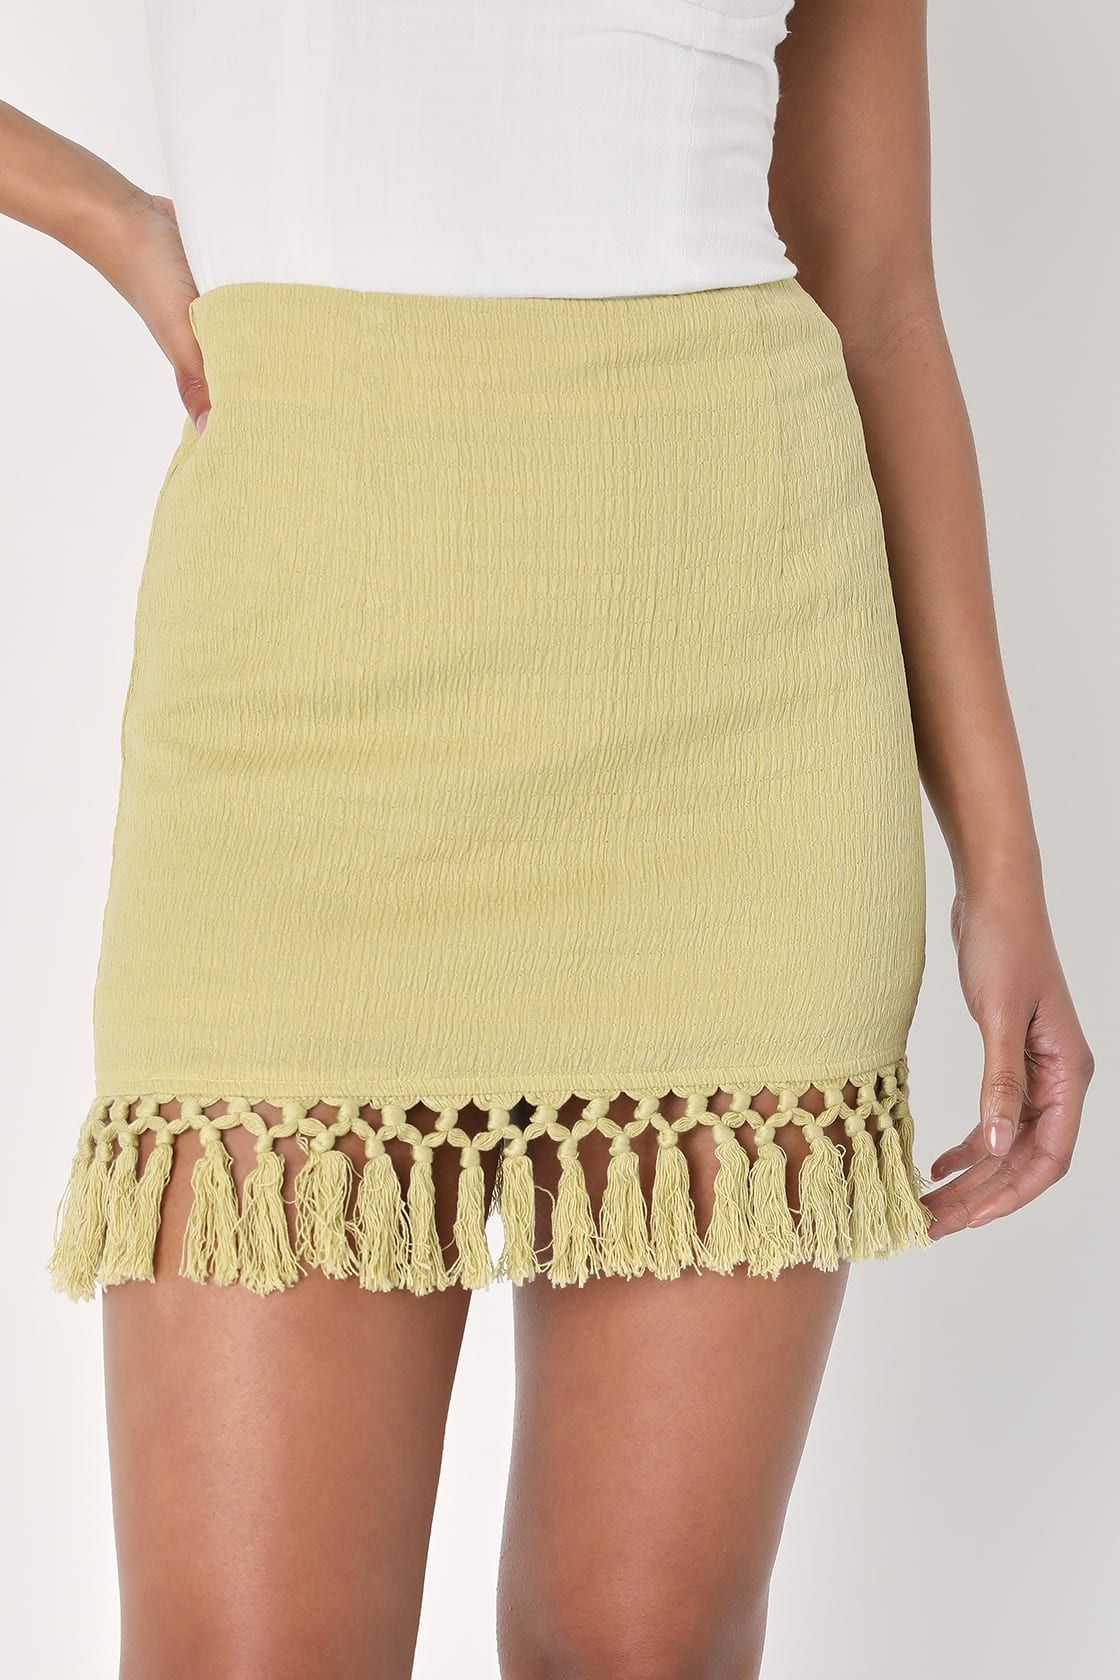 Fortunate Flirt Lime Green Crinkled Fringe Mini Skirt | Lulus (US)